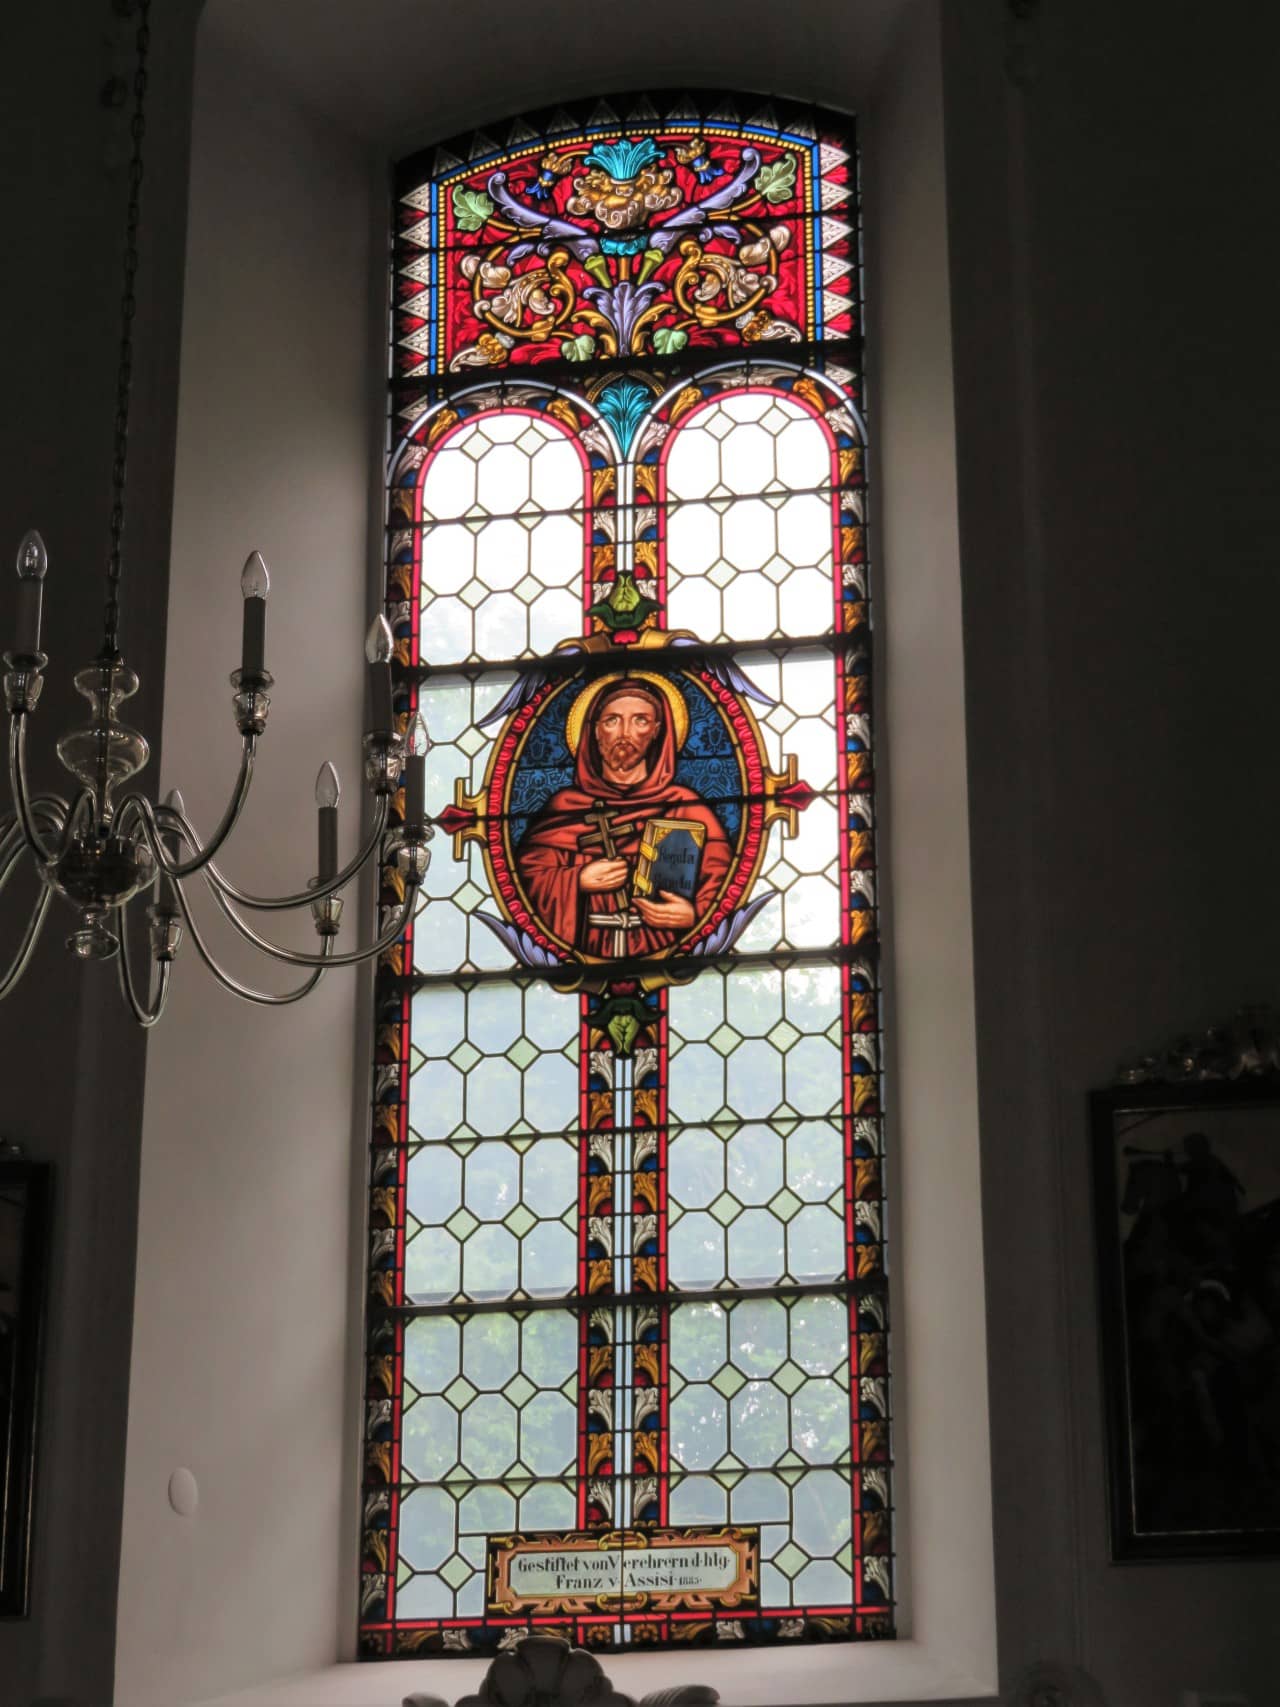 Für die Stiftung des dem hl. Franz von Assisi gewidmeten Fensters auf der Männerseite fanden sich einige Verehrer des Heiligen zusammen.